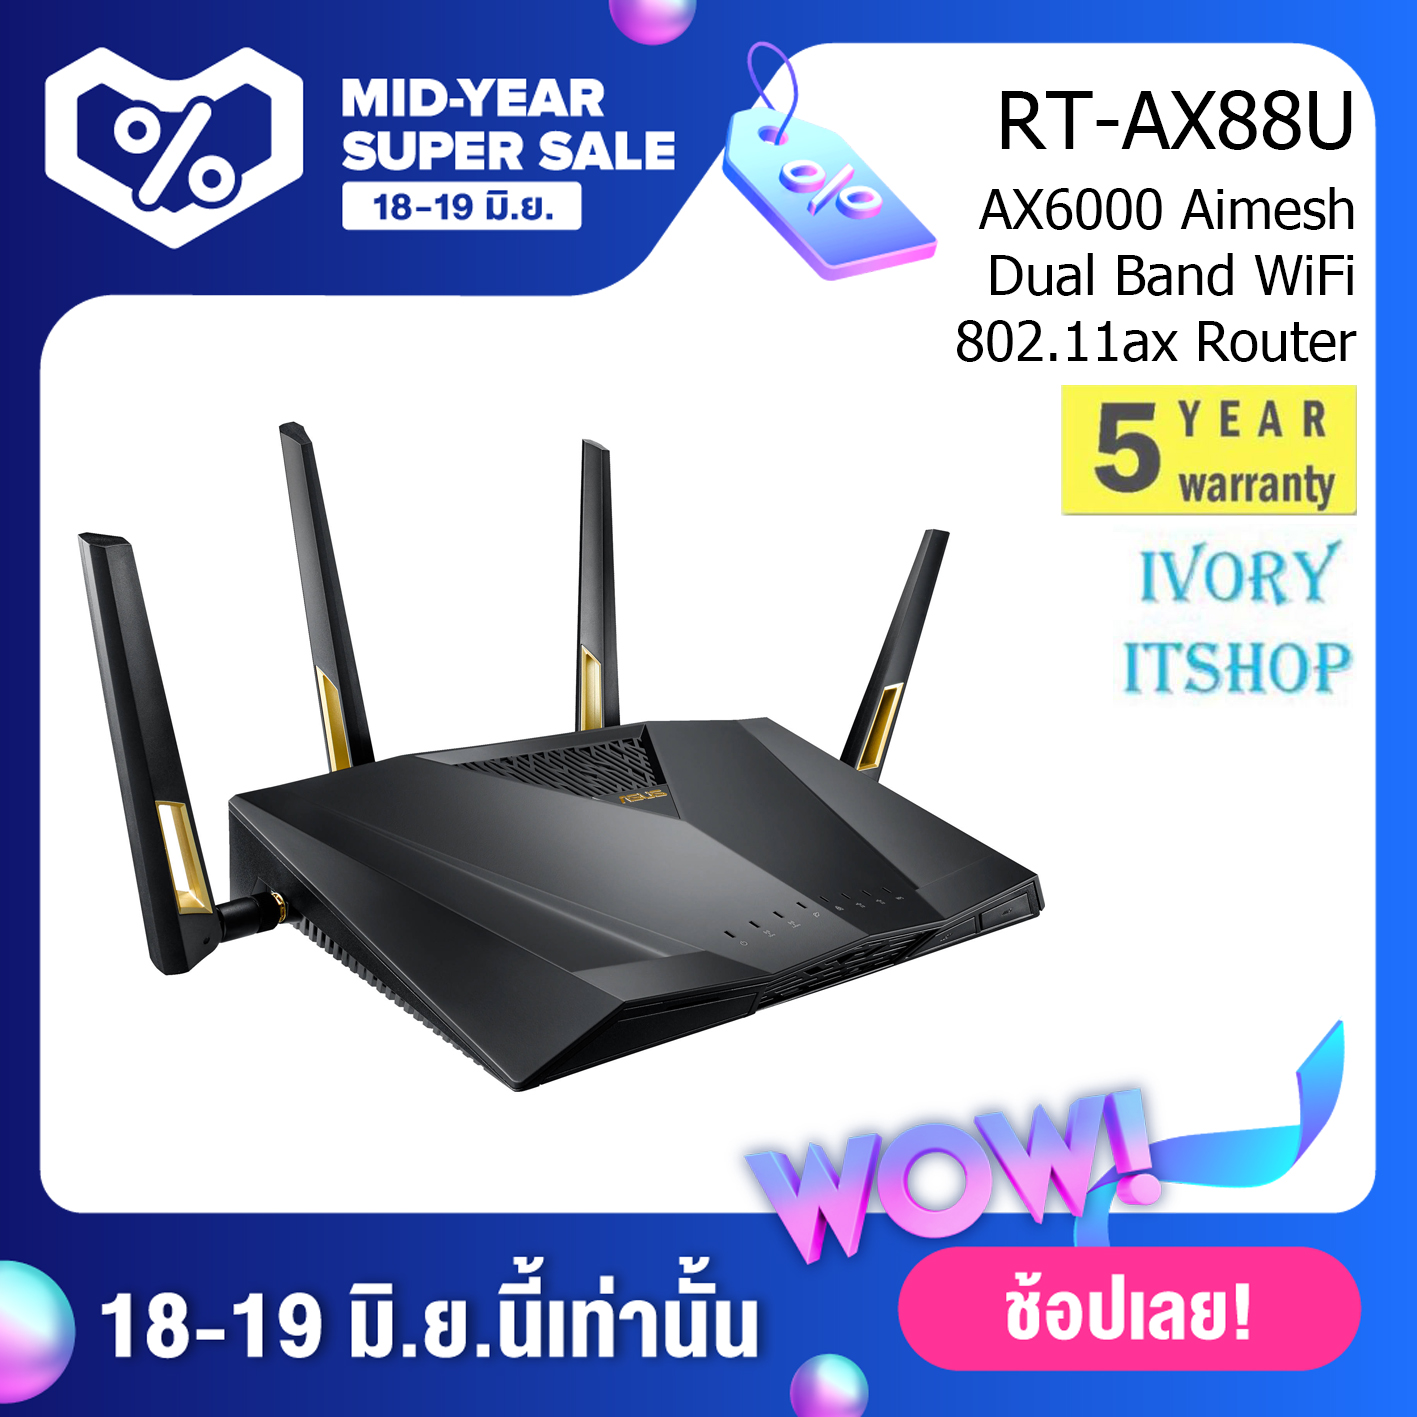 RT-AX88U AX6000 Aimesh Dual Band WiFi 802.11ax Router/ivoryitshop